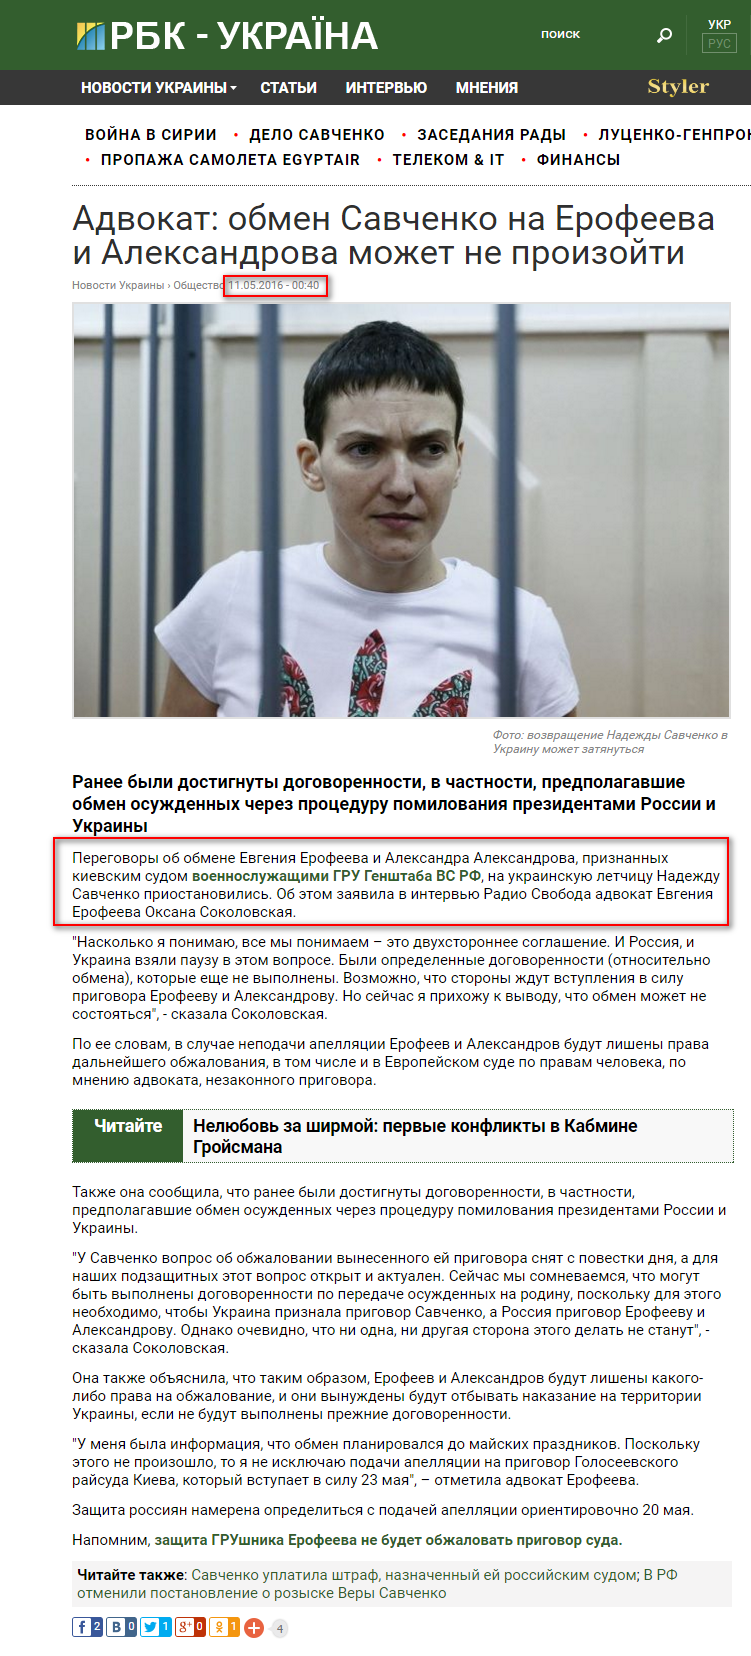 https://www.rbc.ua/rus/news/advokat-obmen-savchenko-erofeeva-aleksandrova-1462915019.html